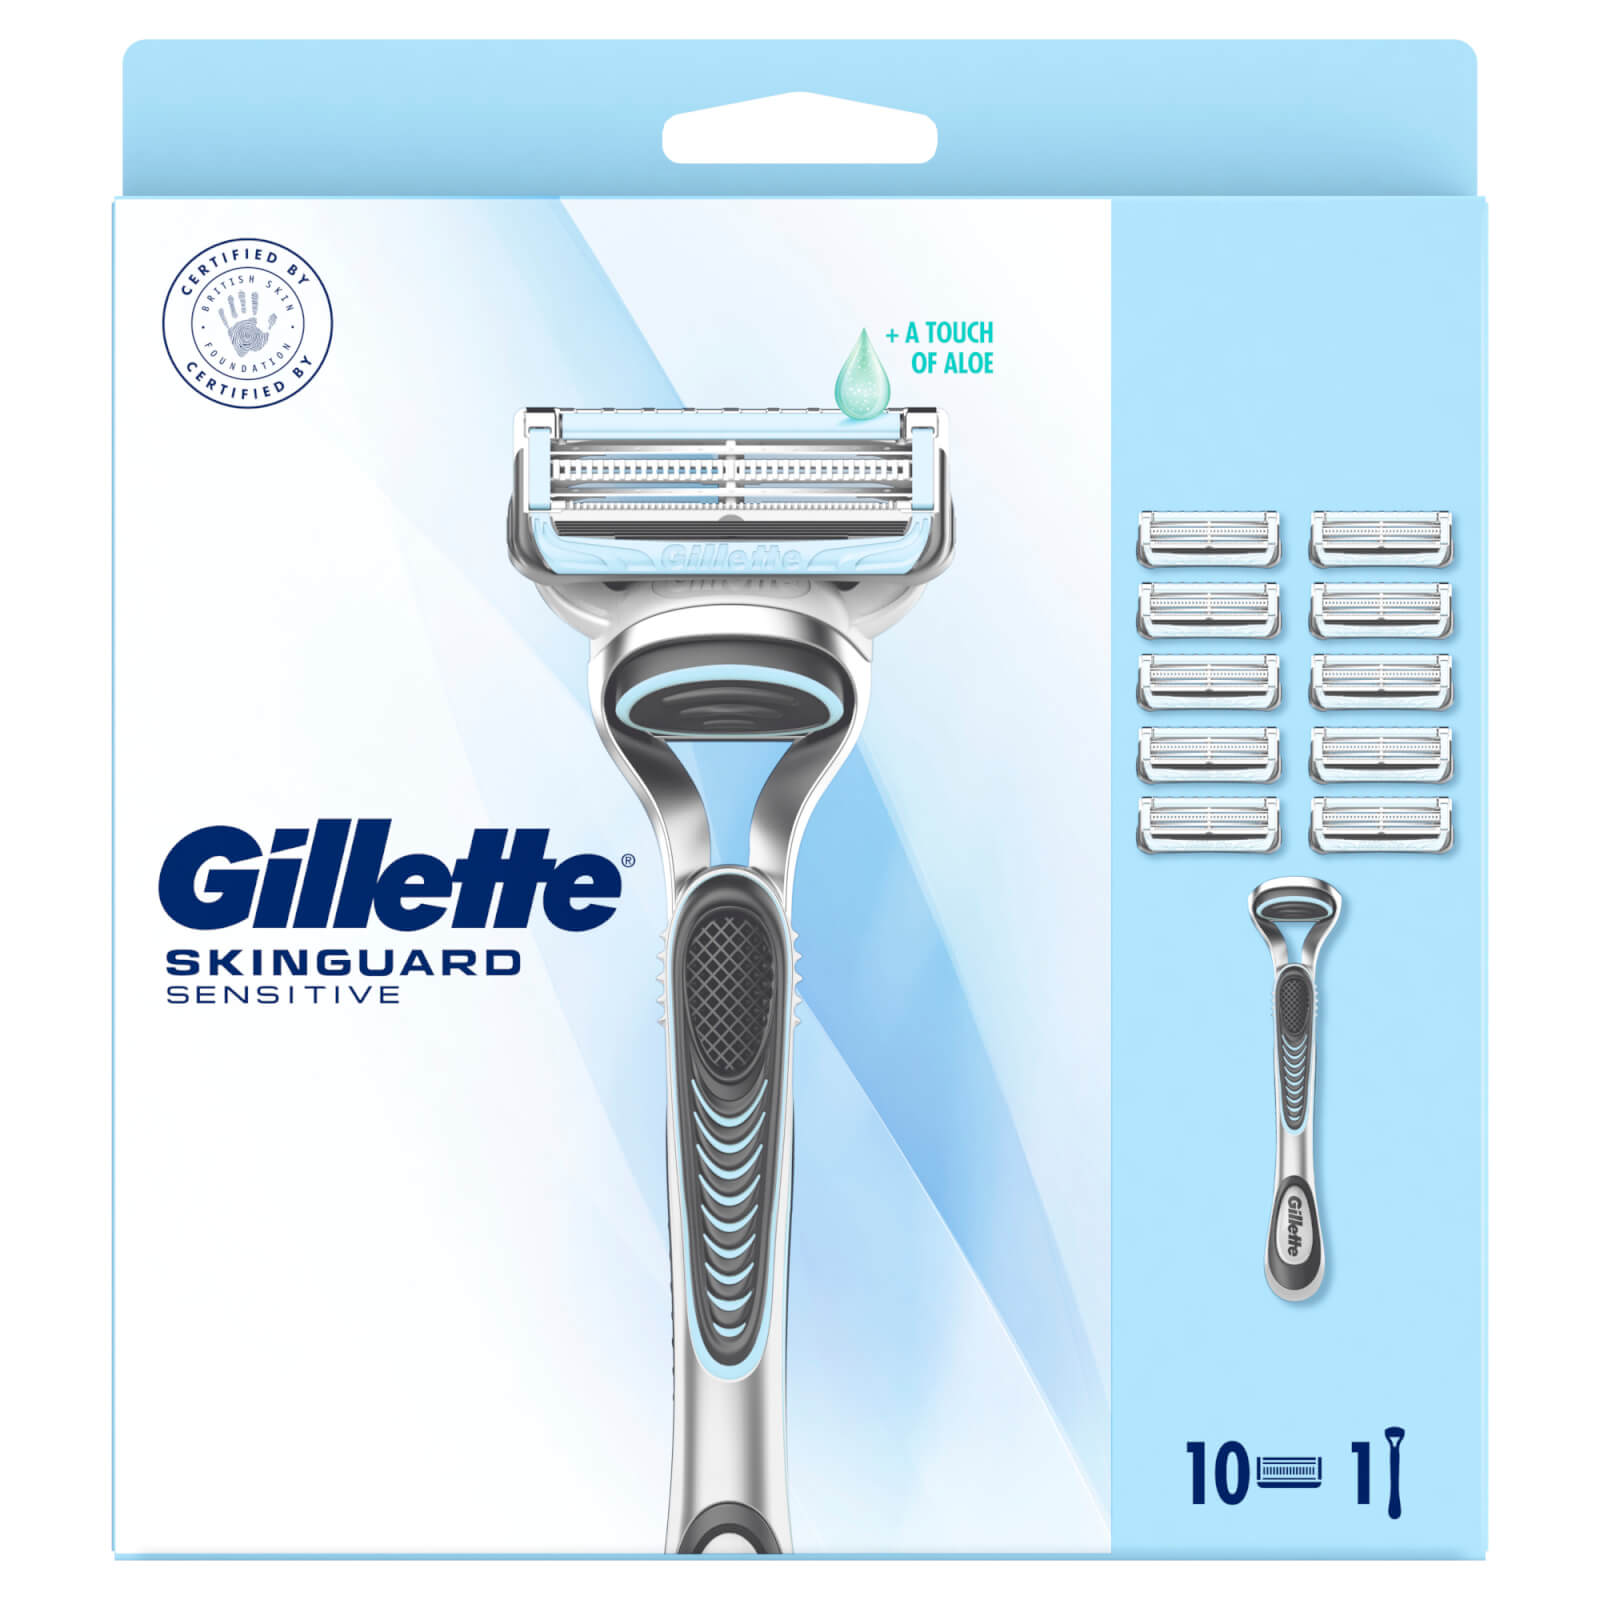 Gillette SkinGuard Sensitive Value Pack